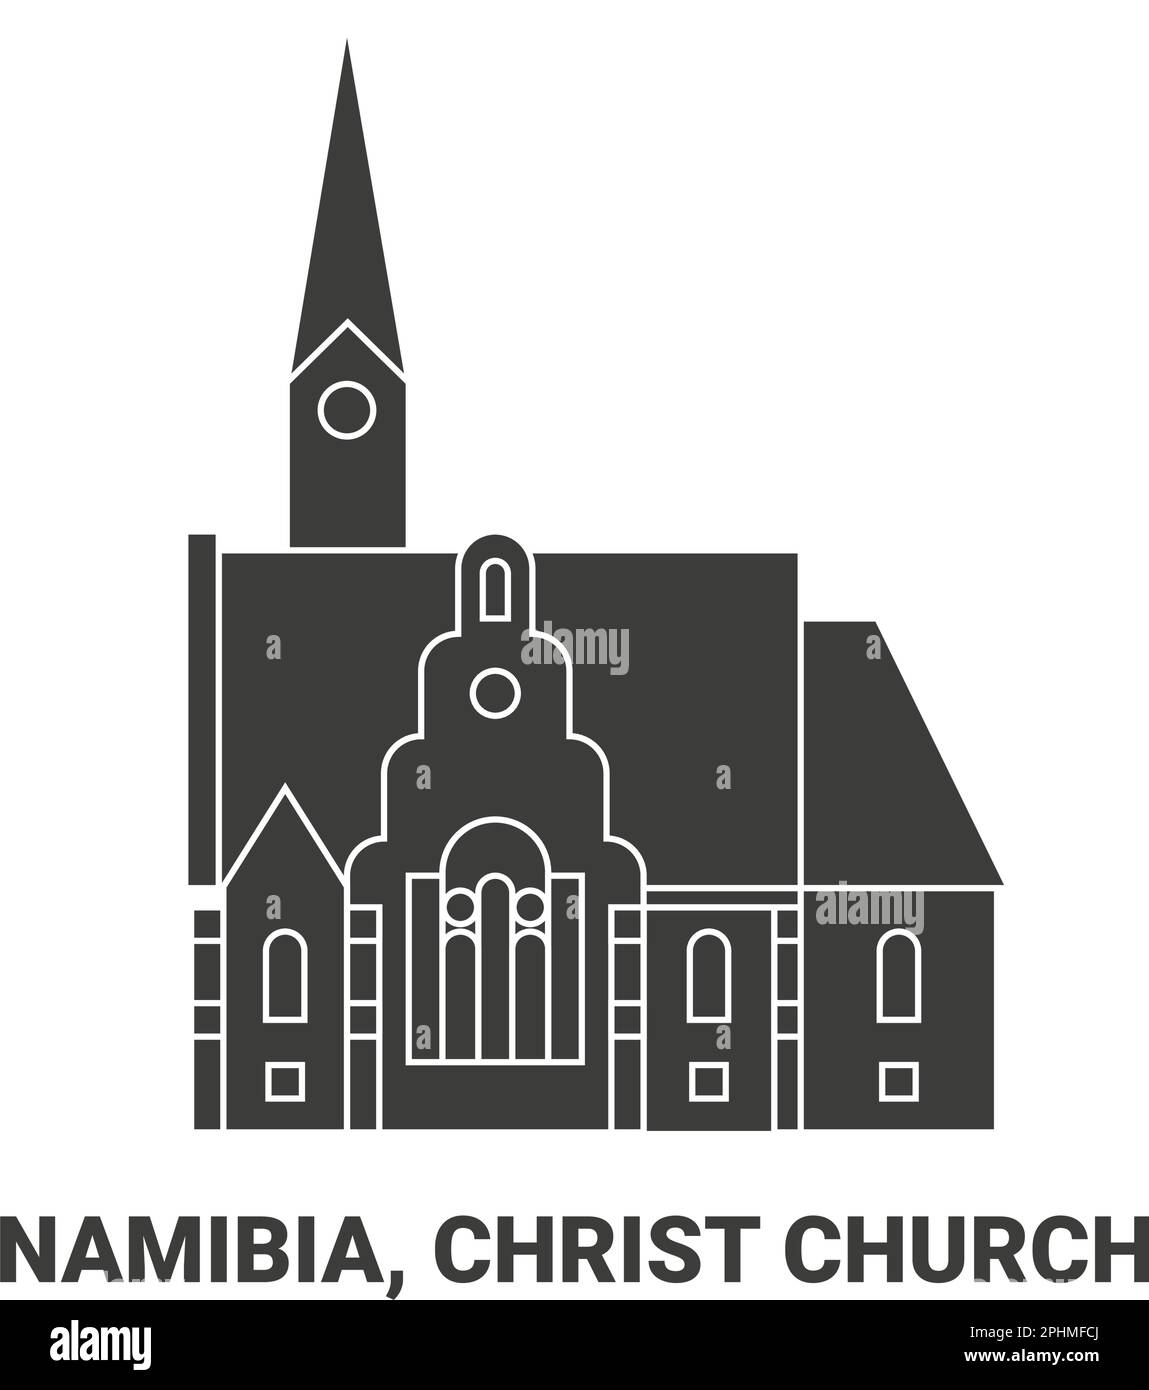 Namibia, Christ Church, travel landmark vector illustration Stock Vector